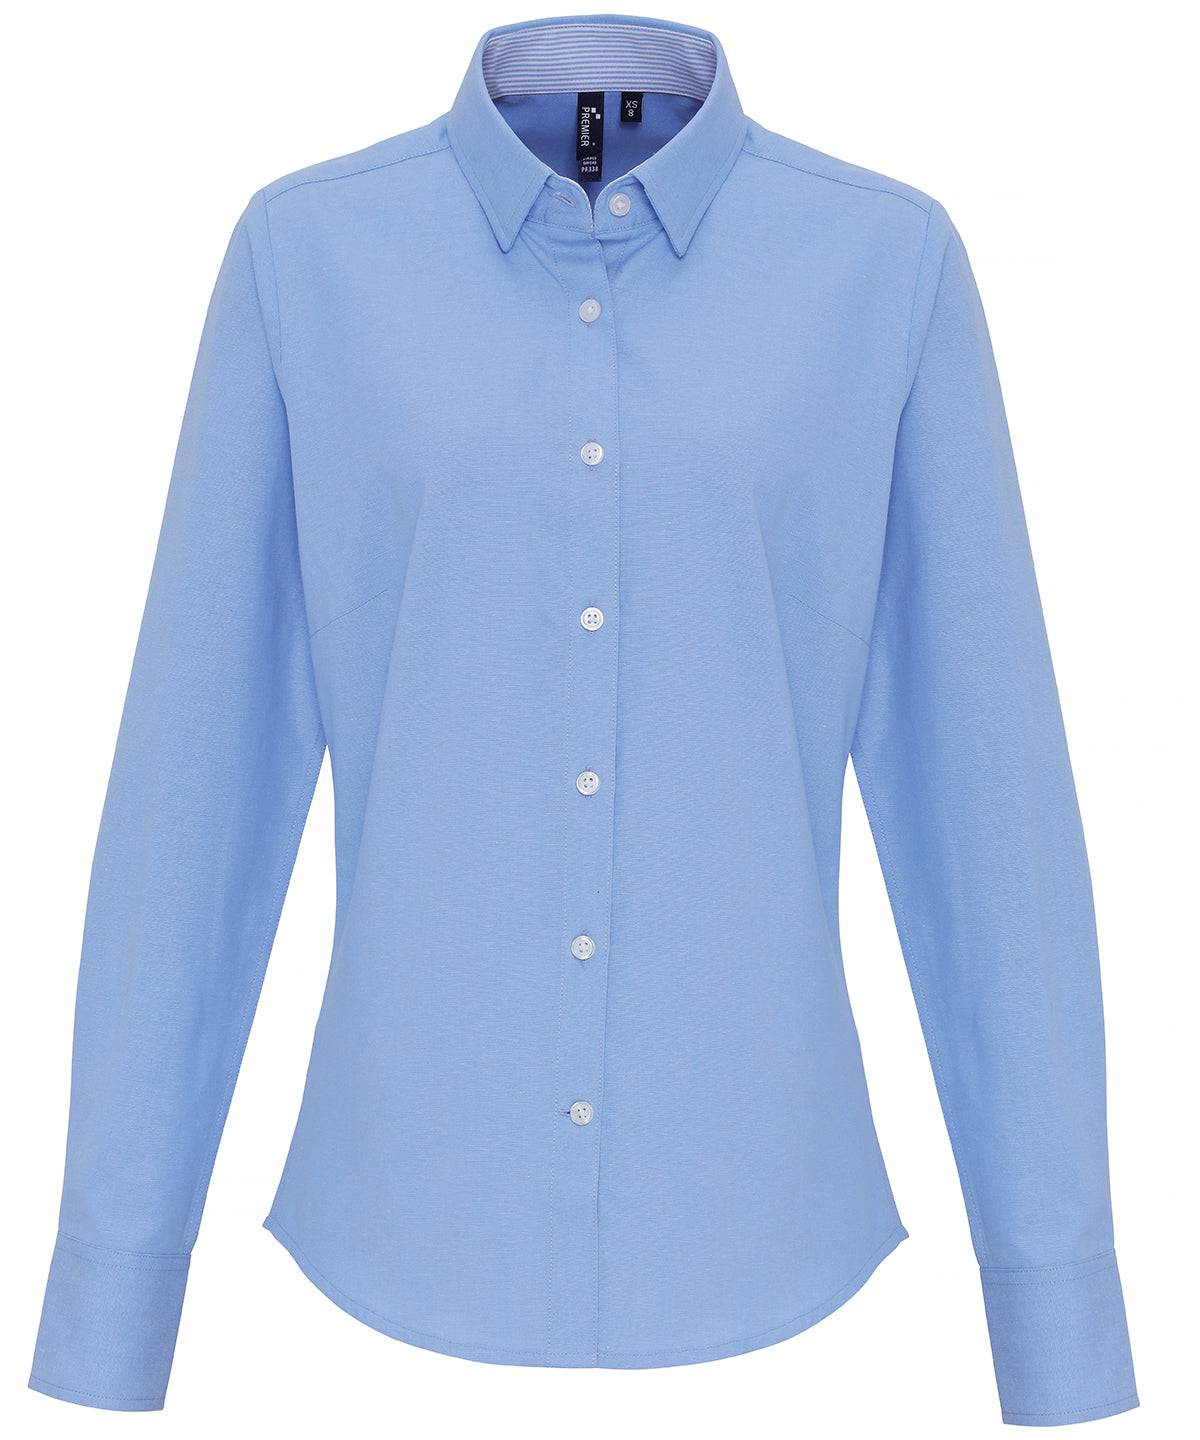 Oxford Blue - Women's cotton-rich Oxford stripes blouse